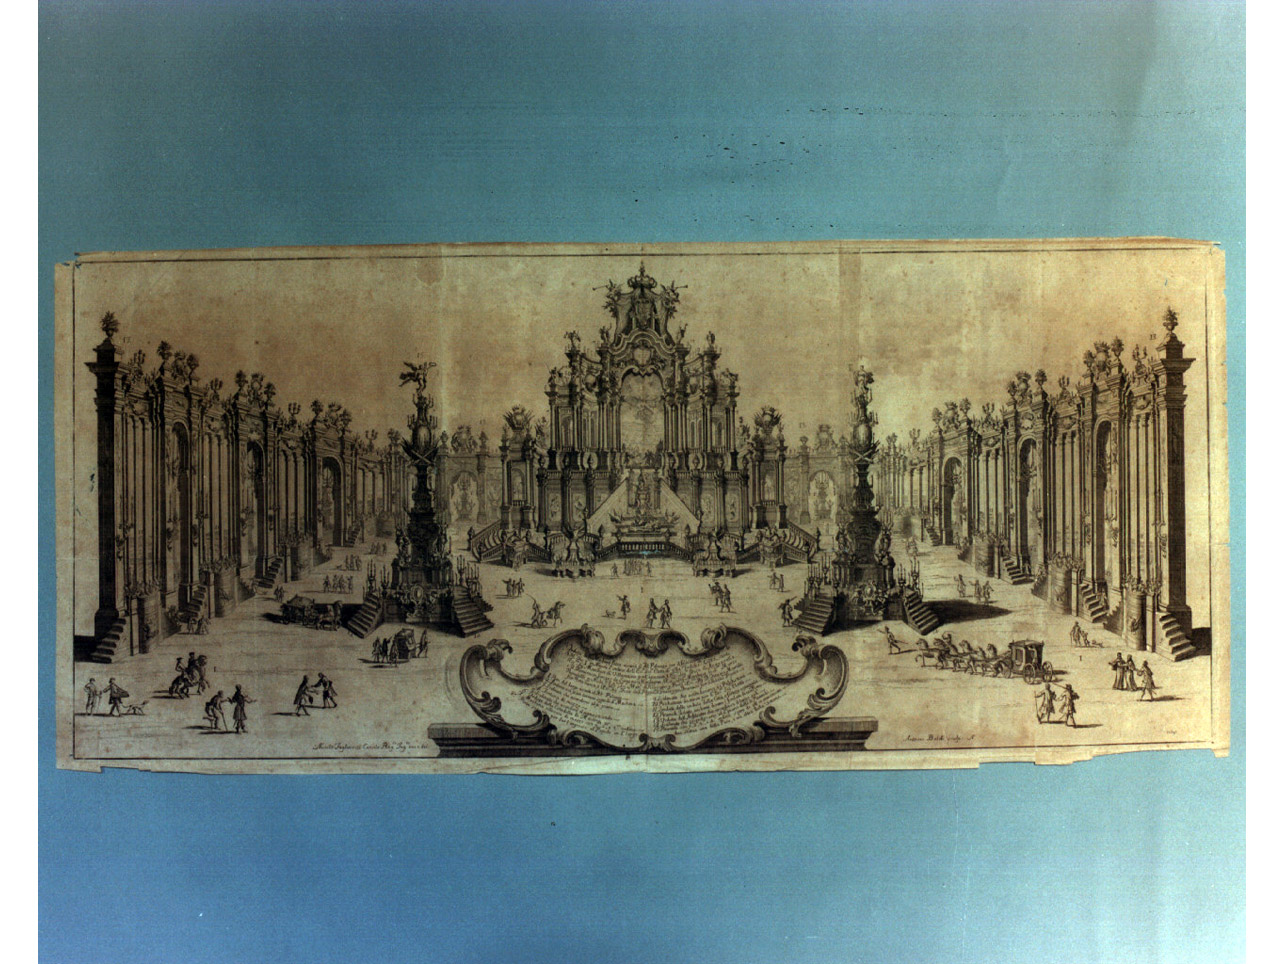 apparato festivo effimero allestito a Largo di Palazzo (stampa, serie) di Baldi Antonio, Tagliacozzi Canale Nicola (sec. XVIII)